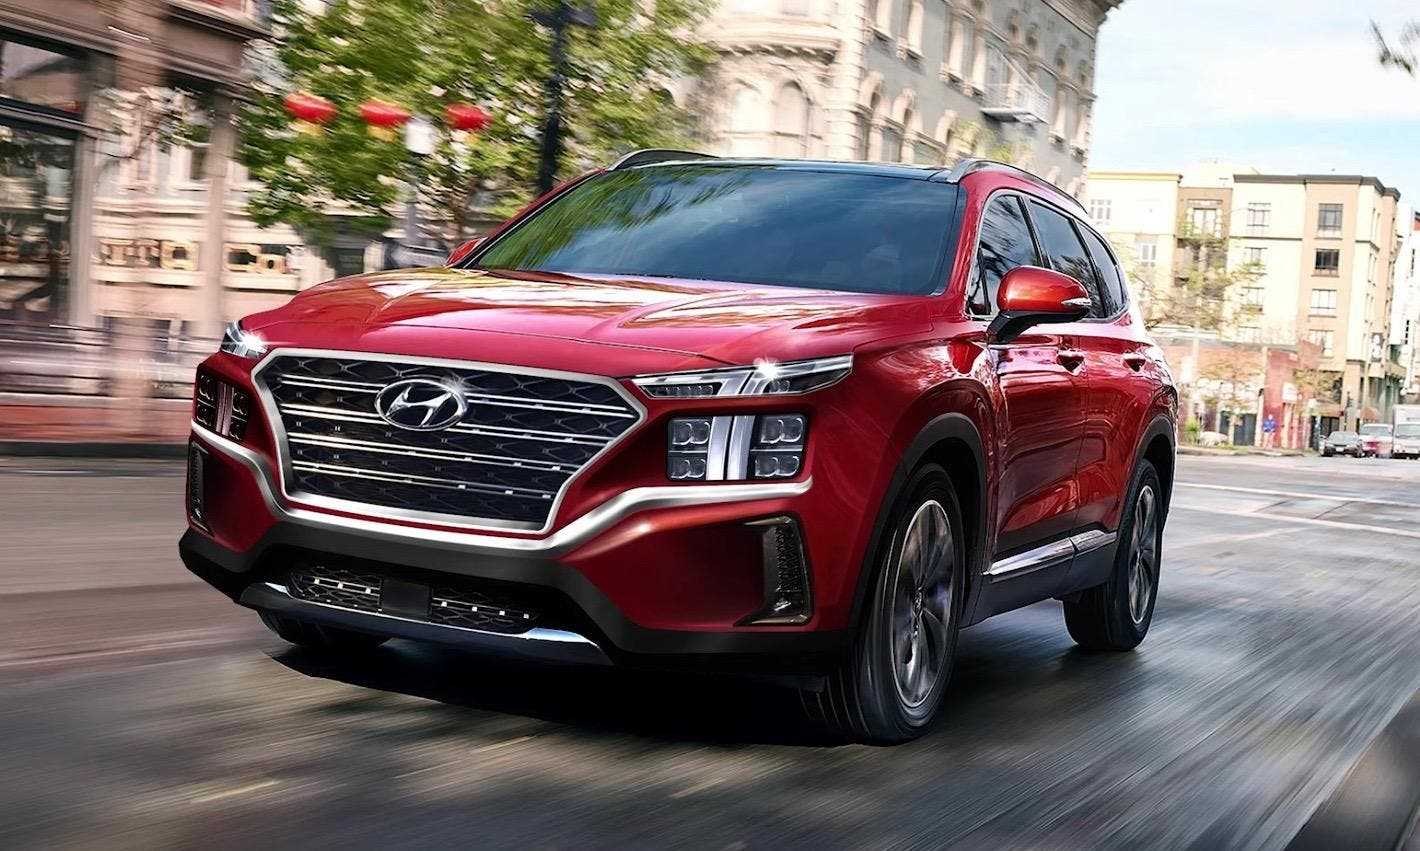 Корейская компания Hyundai сообщила российские цены на флагманский внедорожник Santa Fe новой IV генерации Дебютный показ новинки должен состояться в дни проведения Московской автовыставки ММАС-2018 в последние дни августа